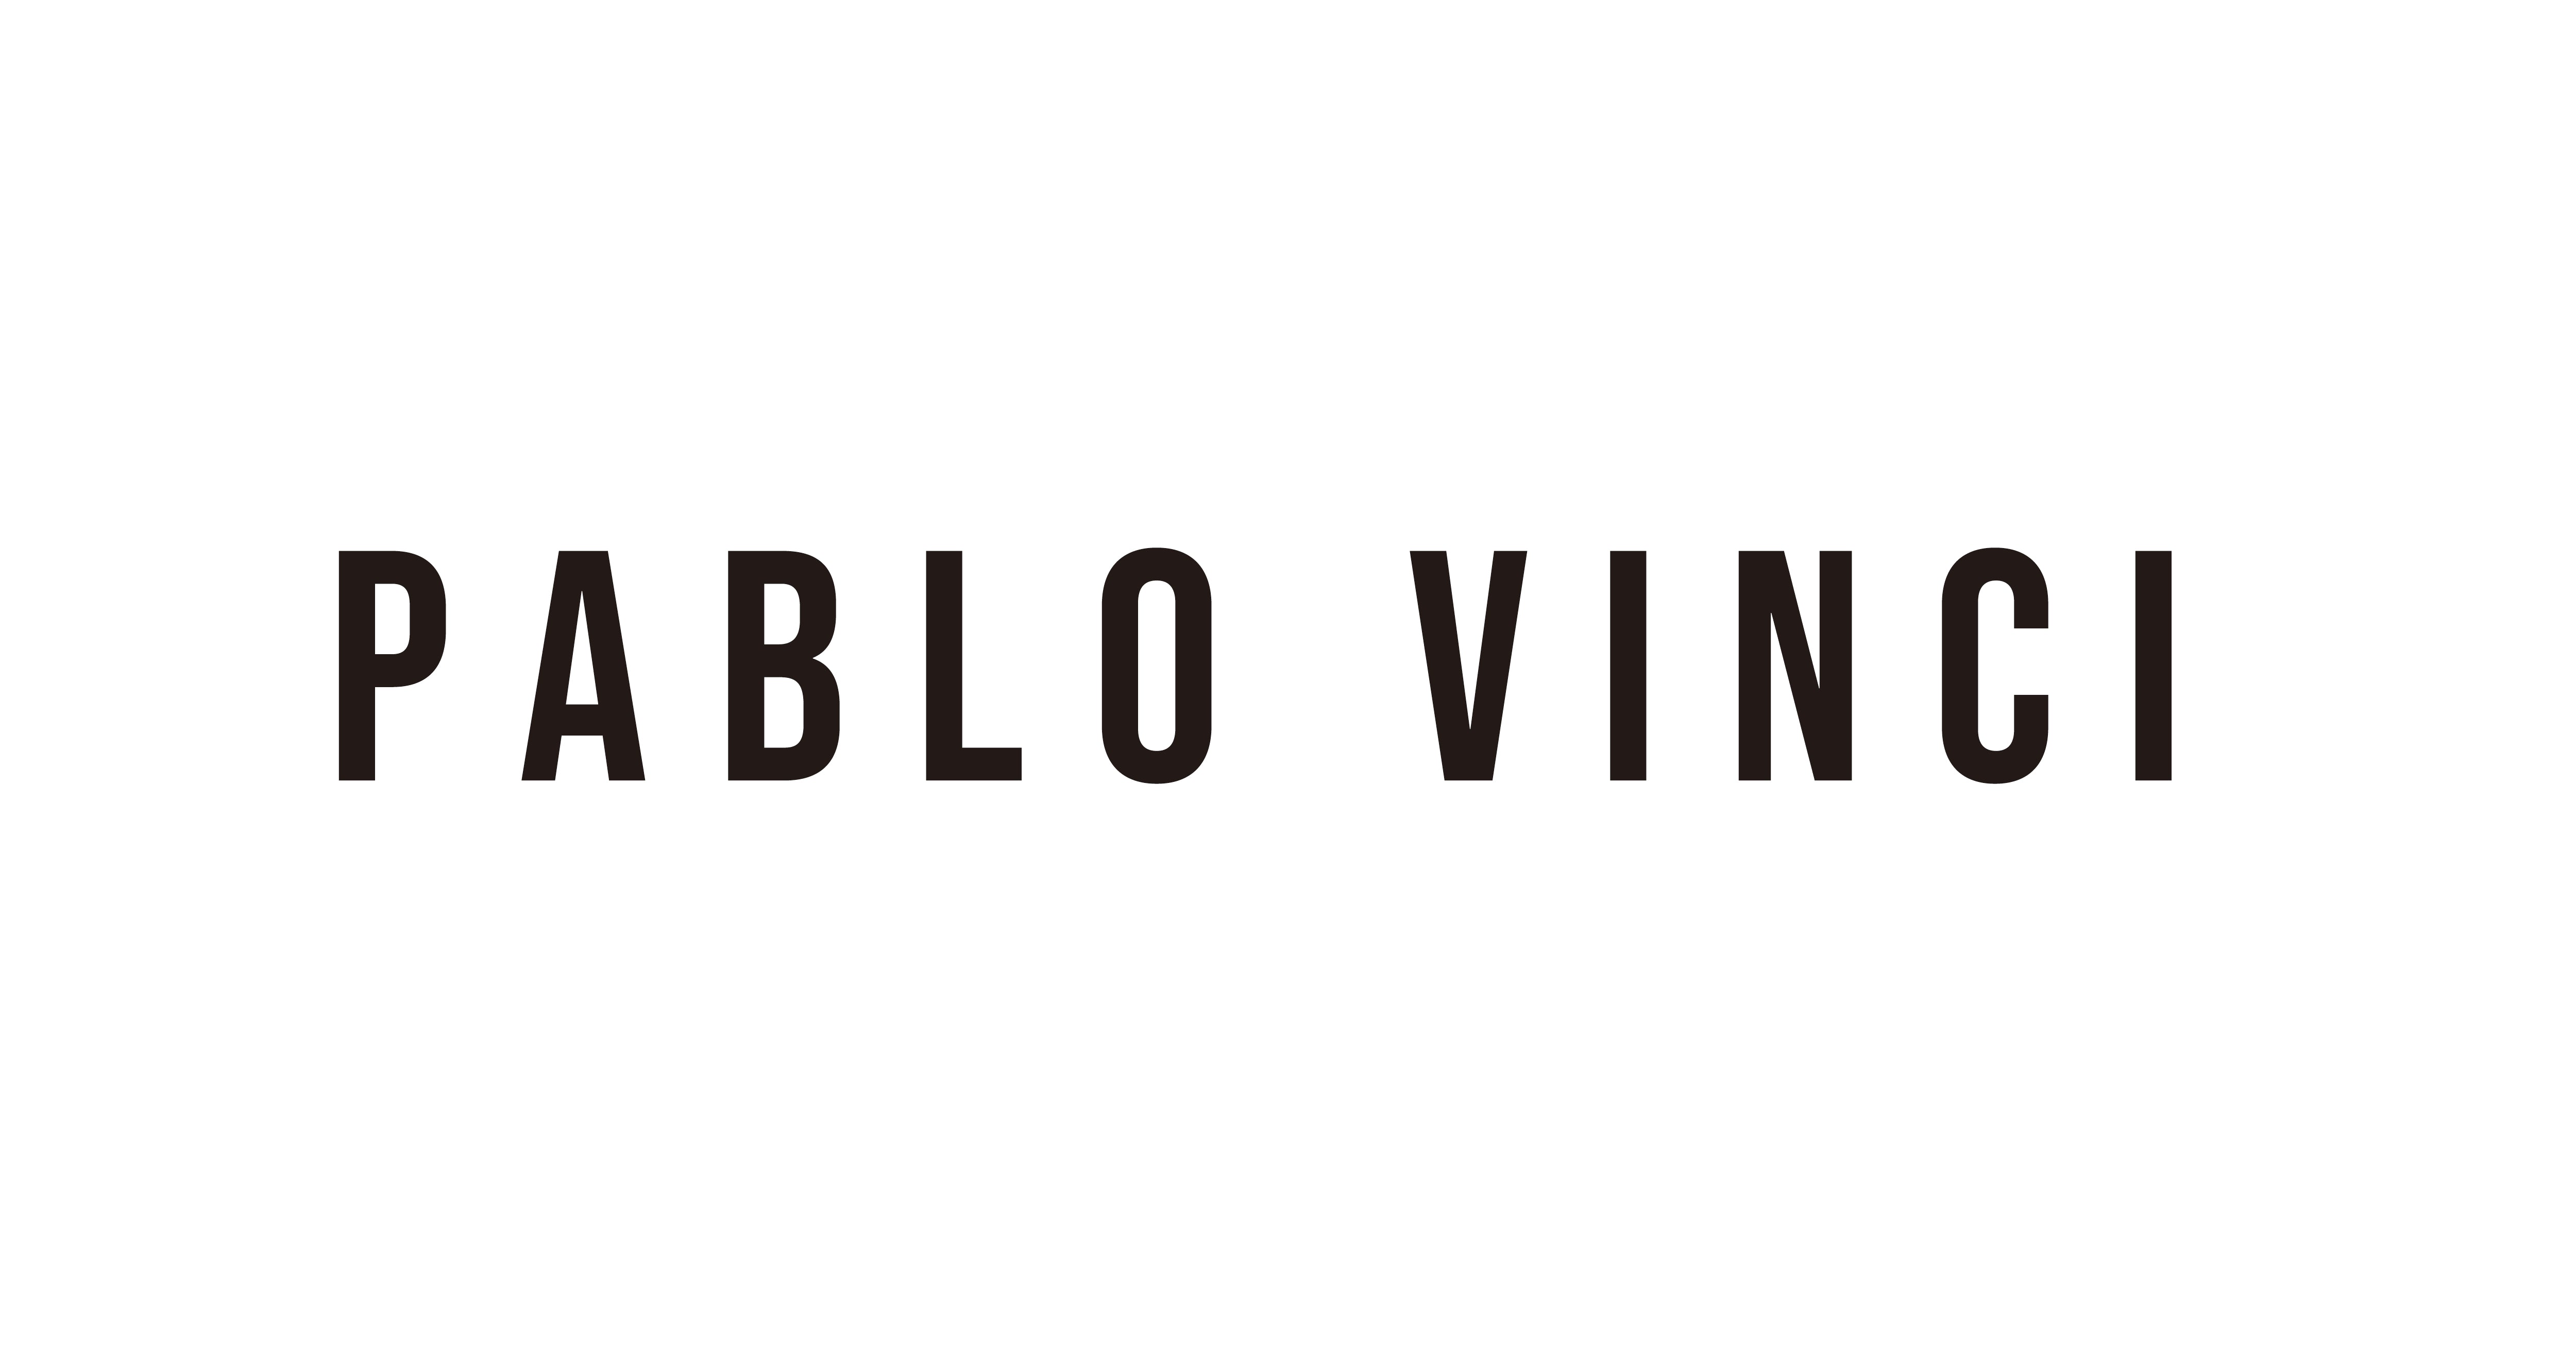 PABLO VINCI – Pablo vinci